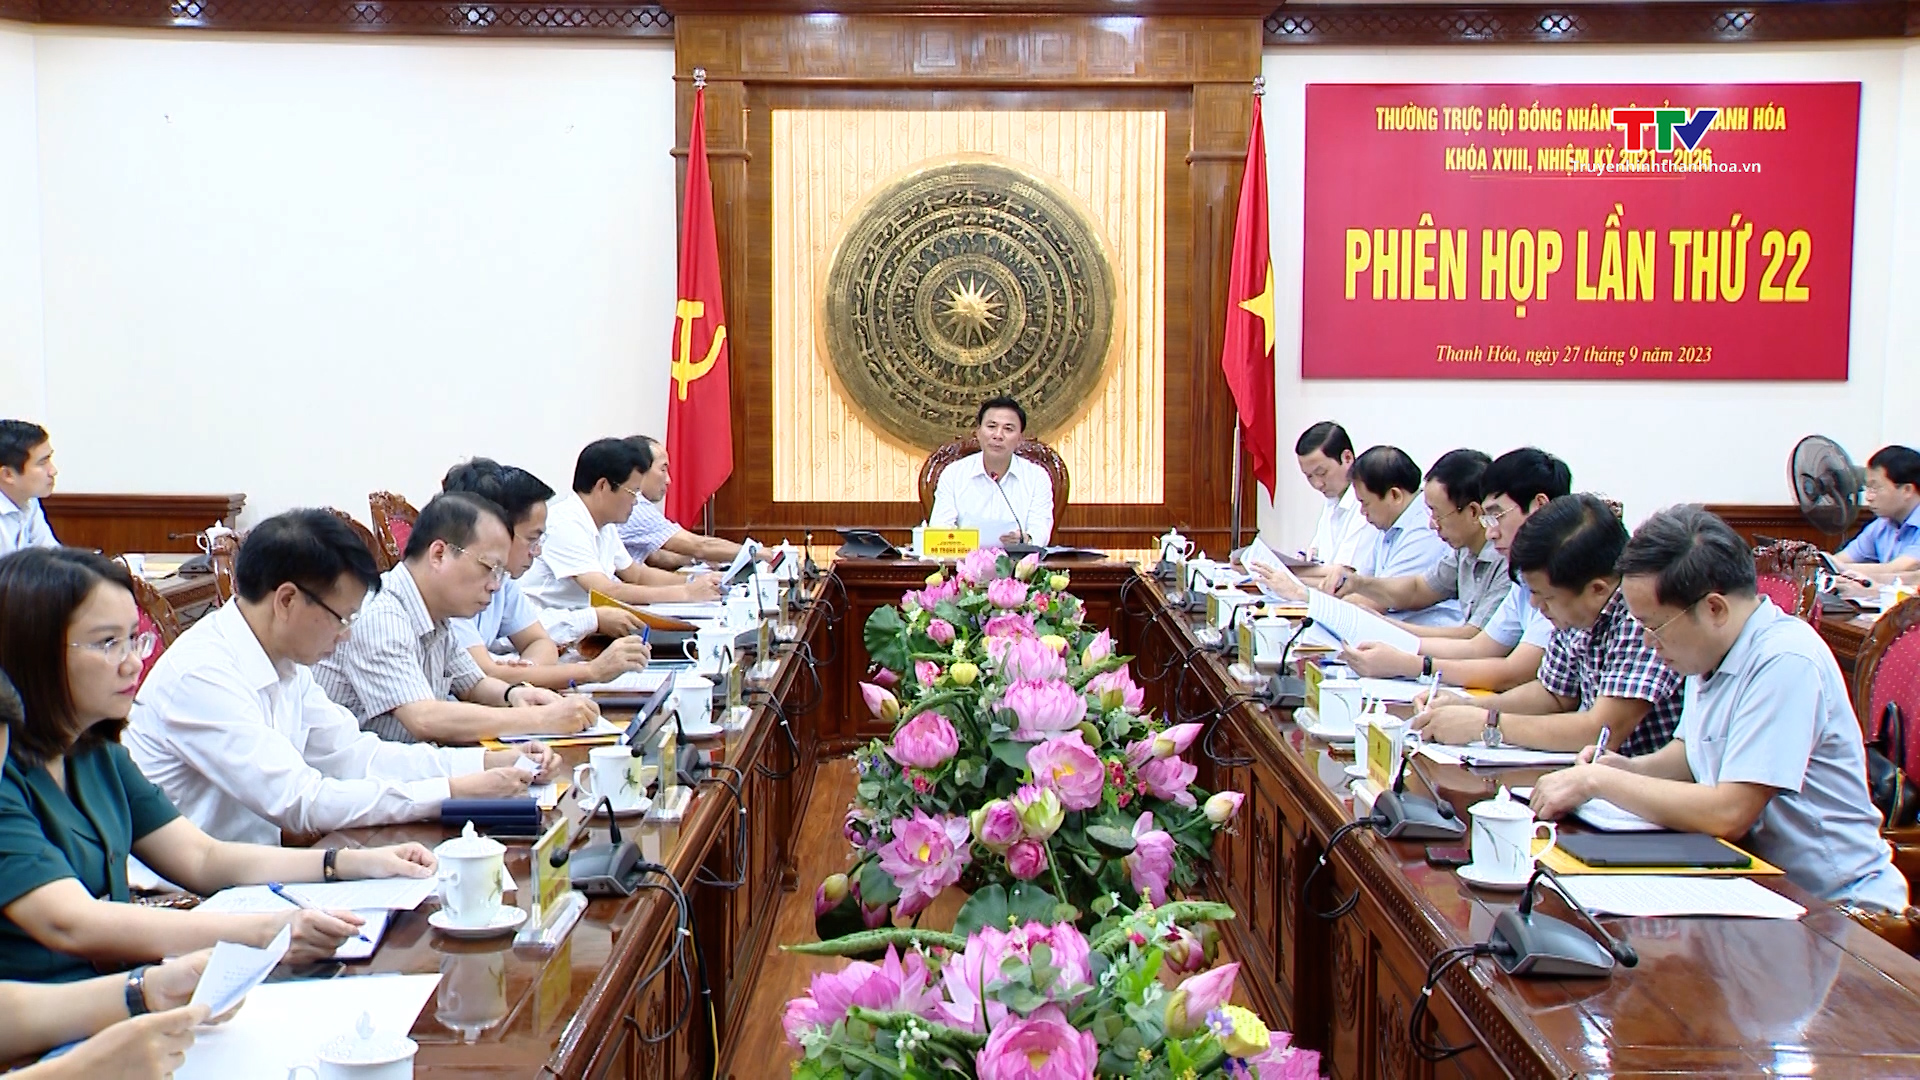 Phiên họp lần thứ 22 Thường trực Hội đồng nhân dân tỉnh Thanh Hoá - Ảnh 2.